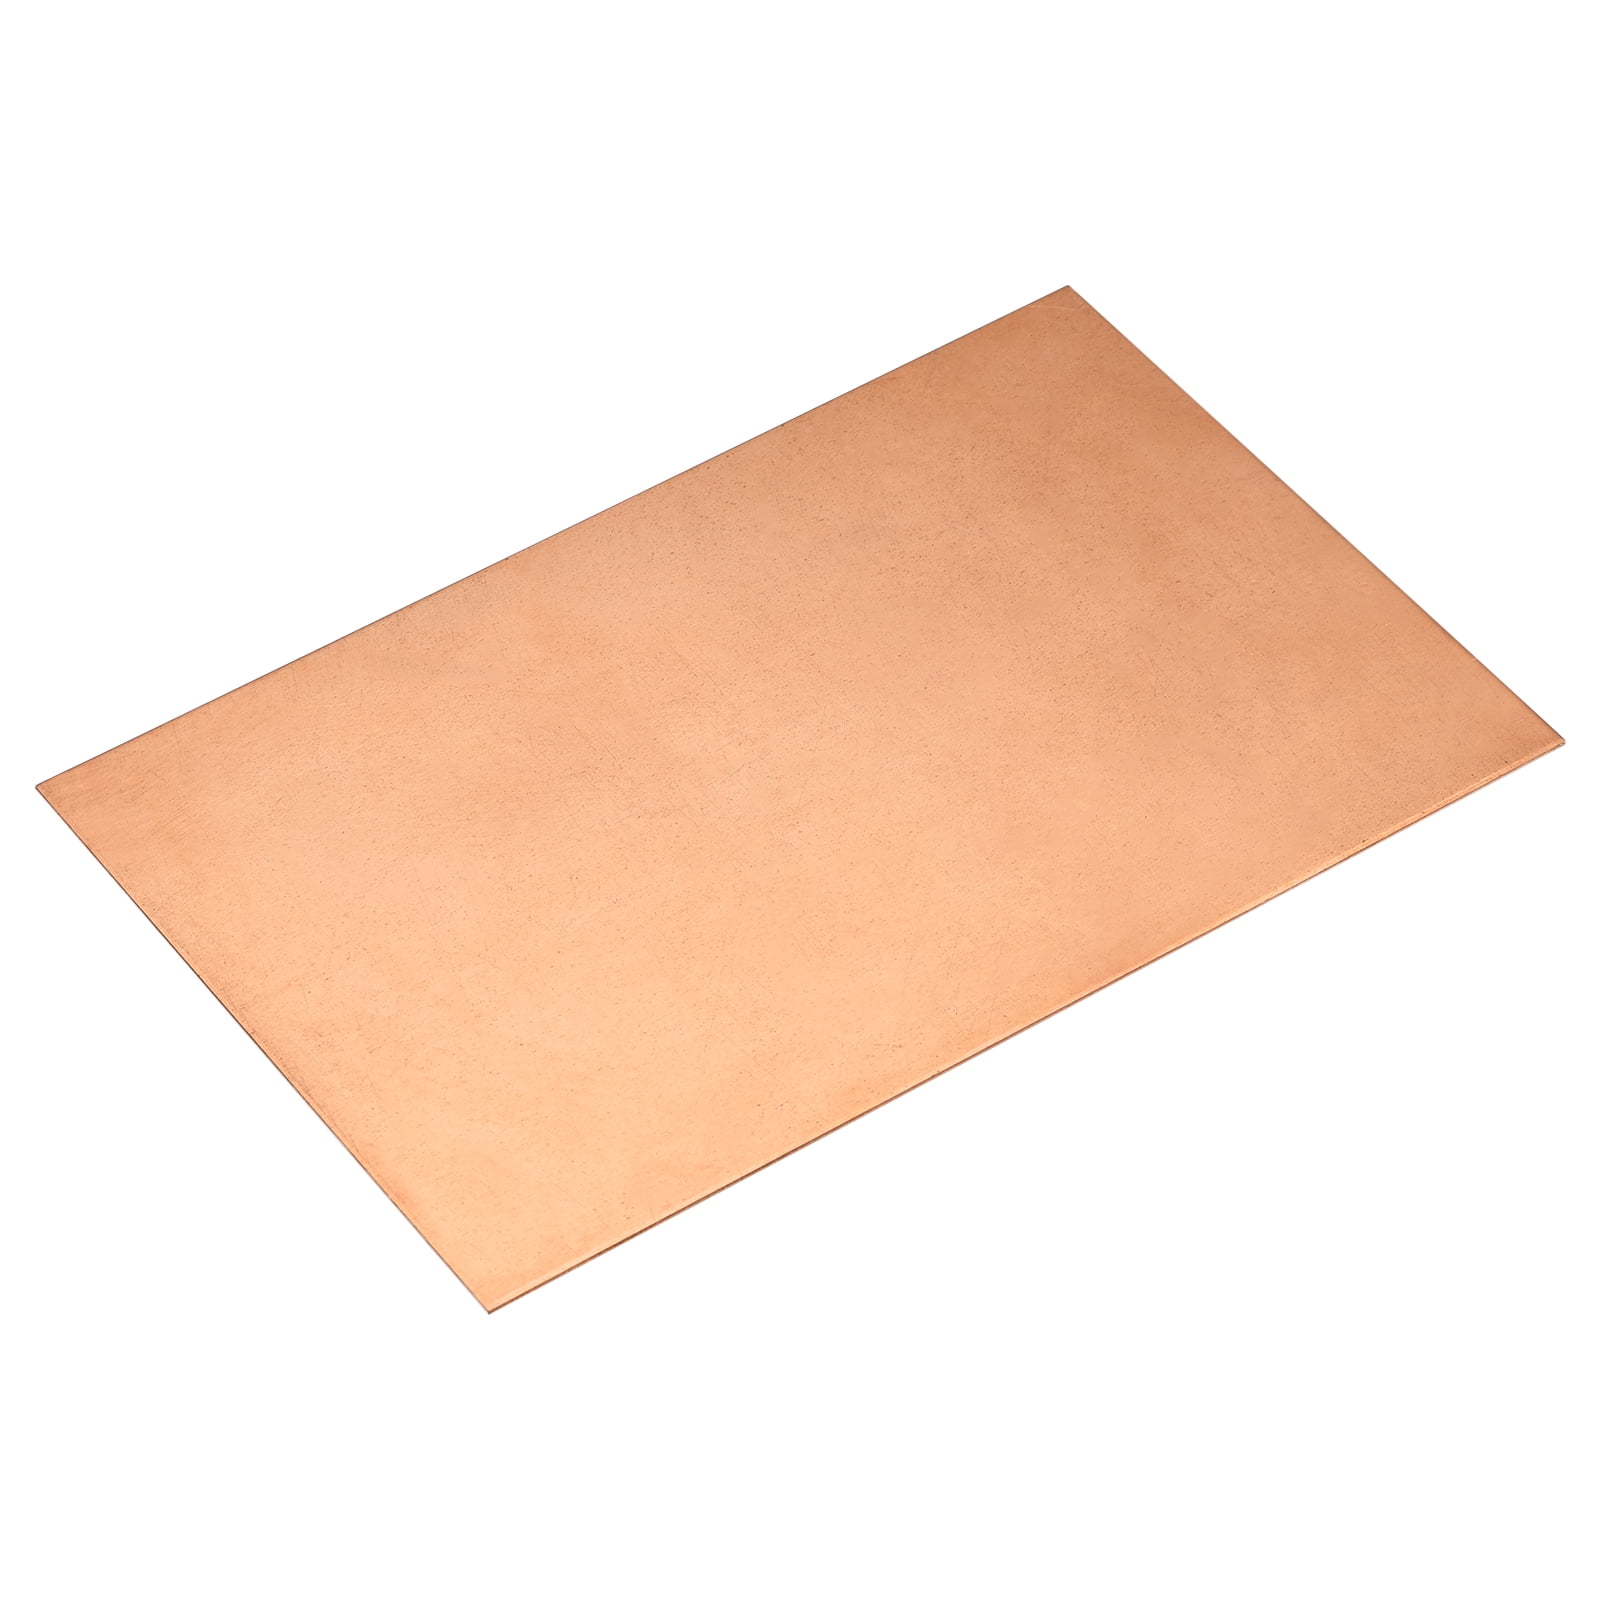 24 Ga Copper Sheet Metal 2 x 8 (Pack Of 2)